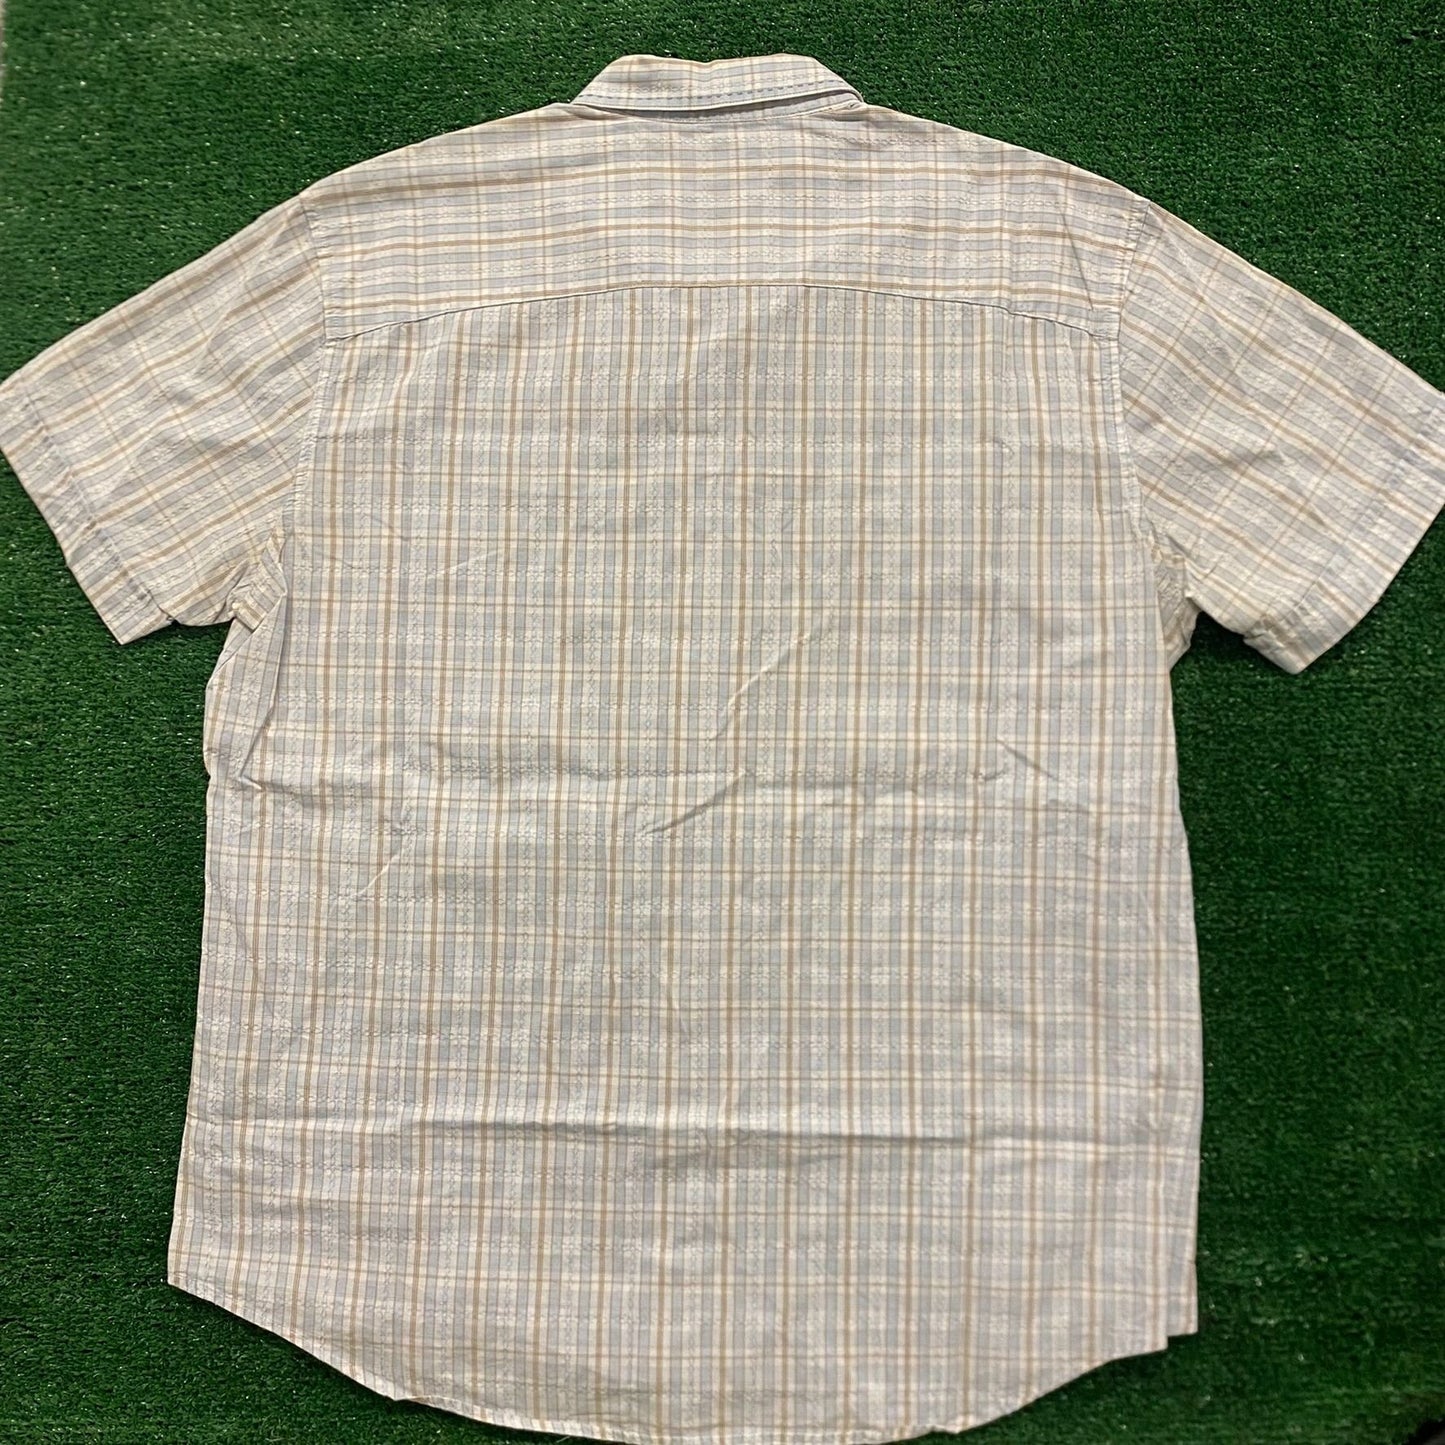 Cubavera Plaid Vintage Casual Button Up Shirt